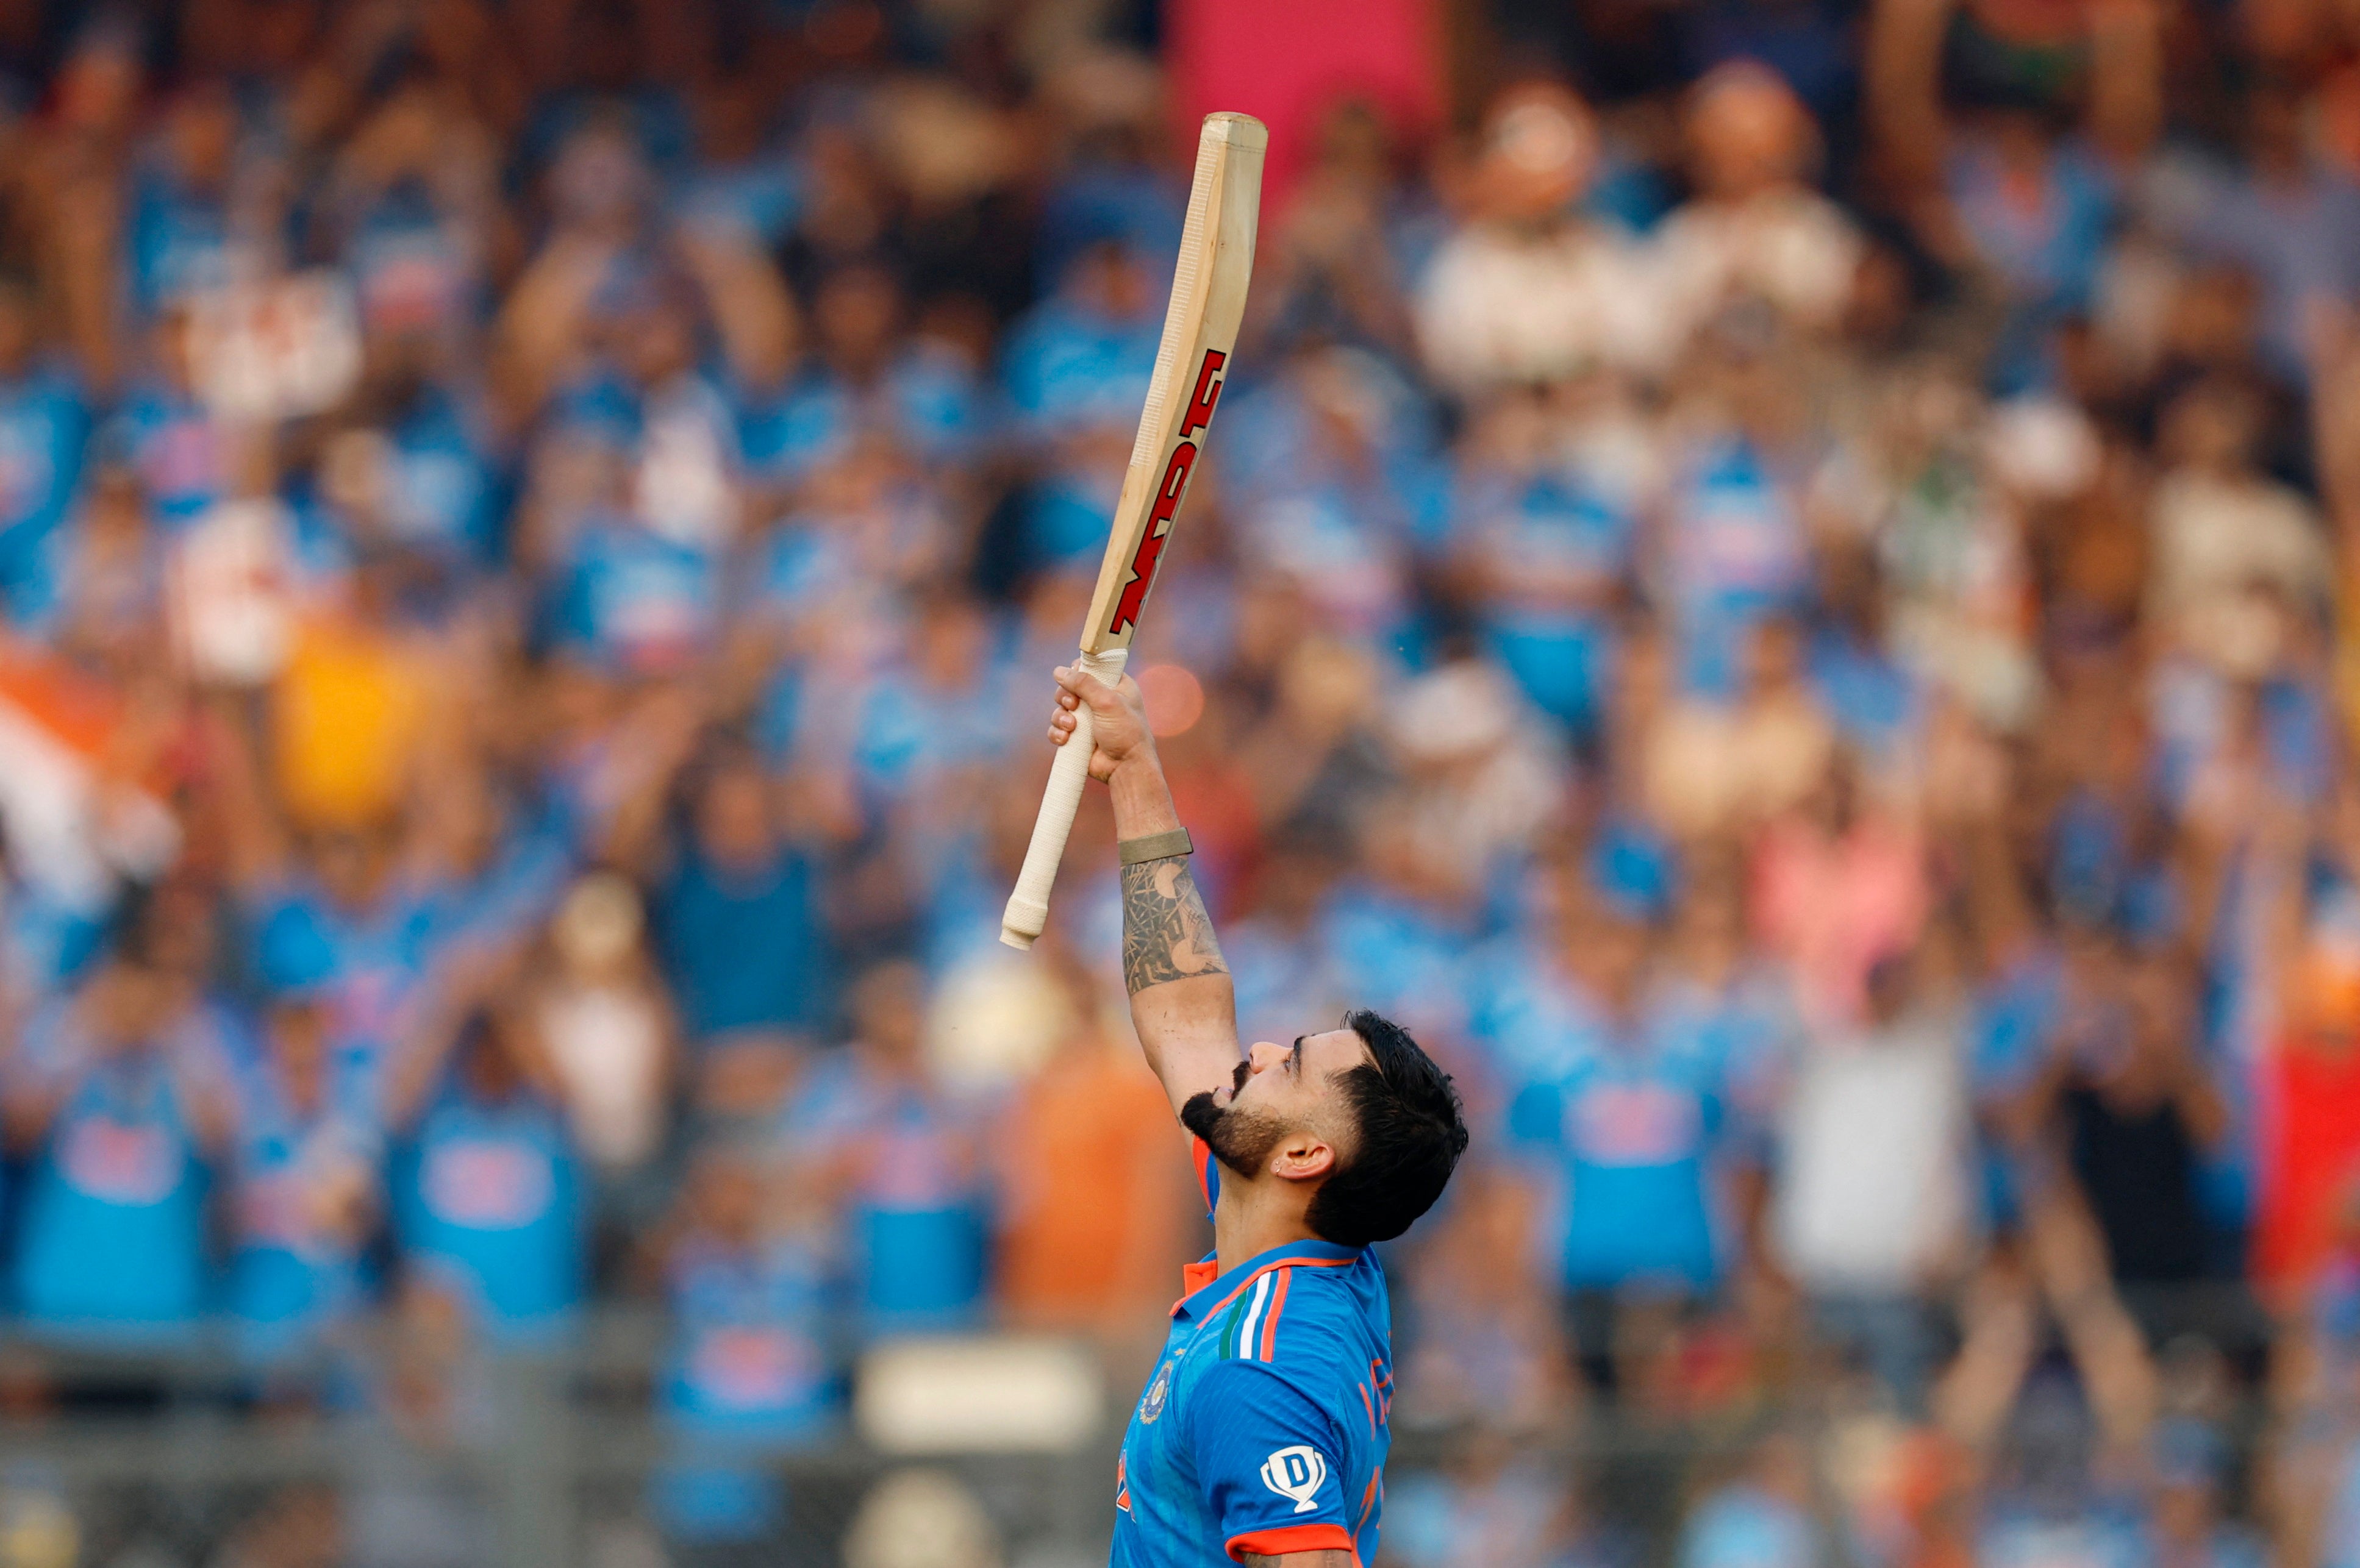 Virat Kohli scored his 50th ODI hundred in